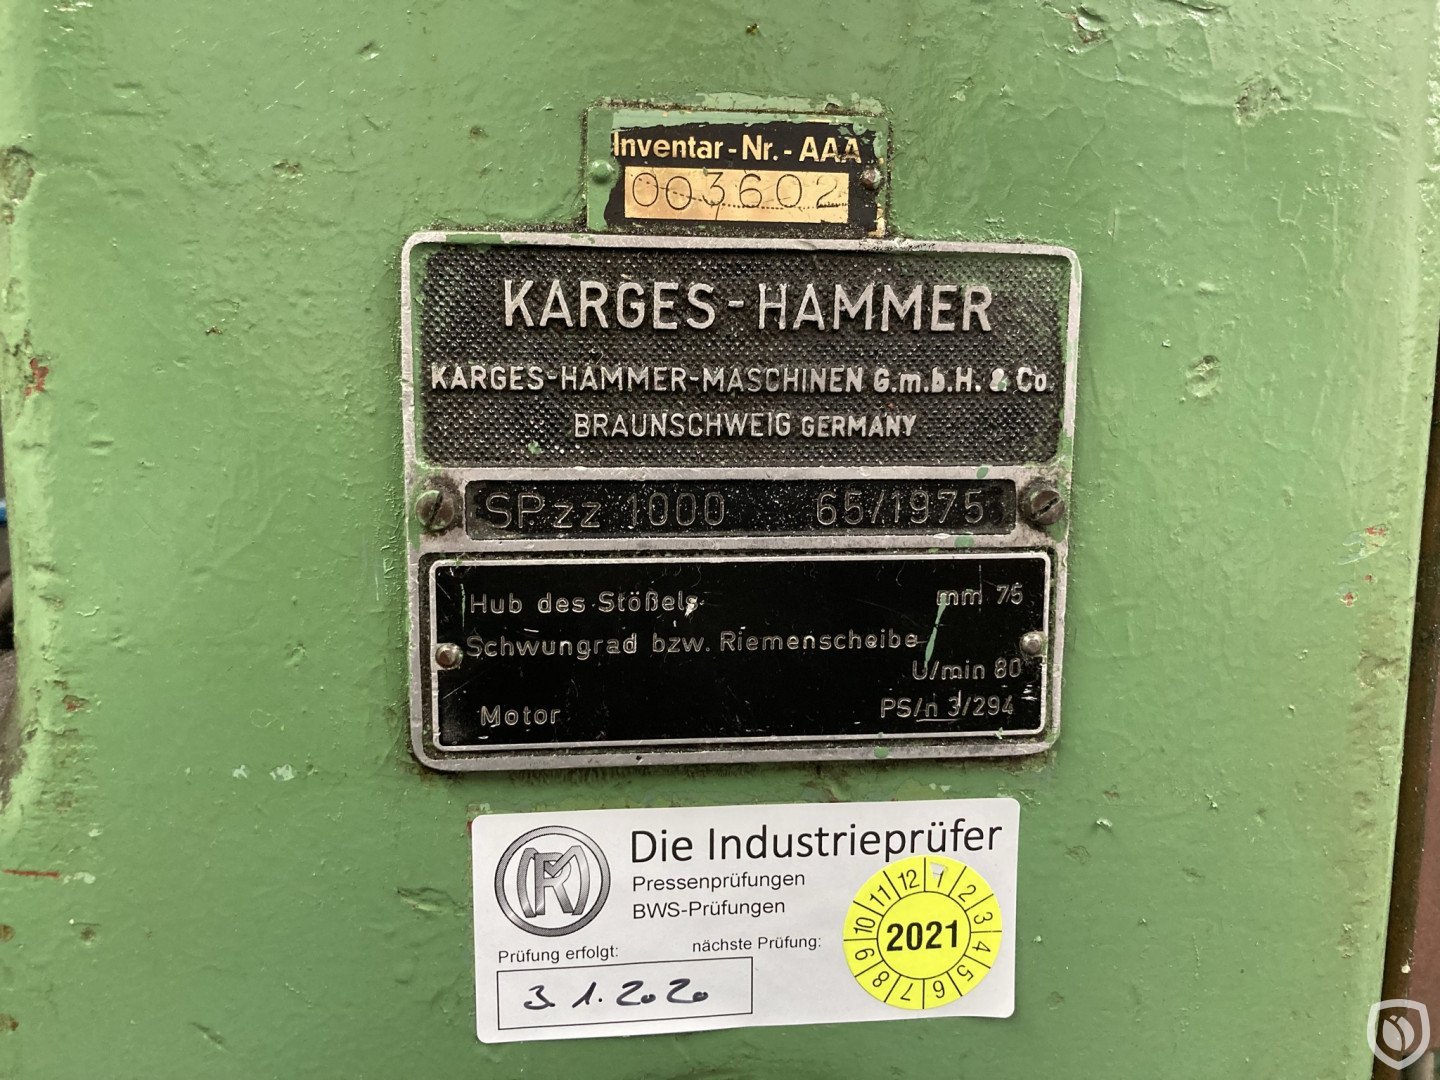 Karges Hammer SPzz 1000